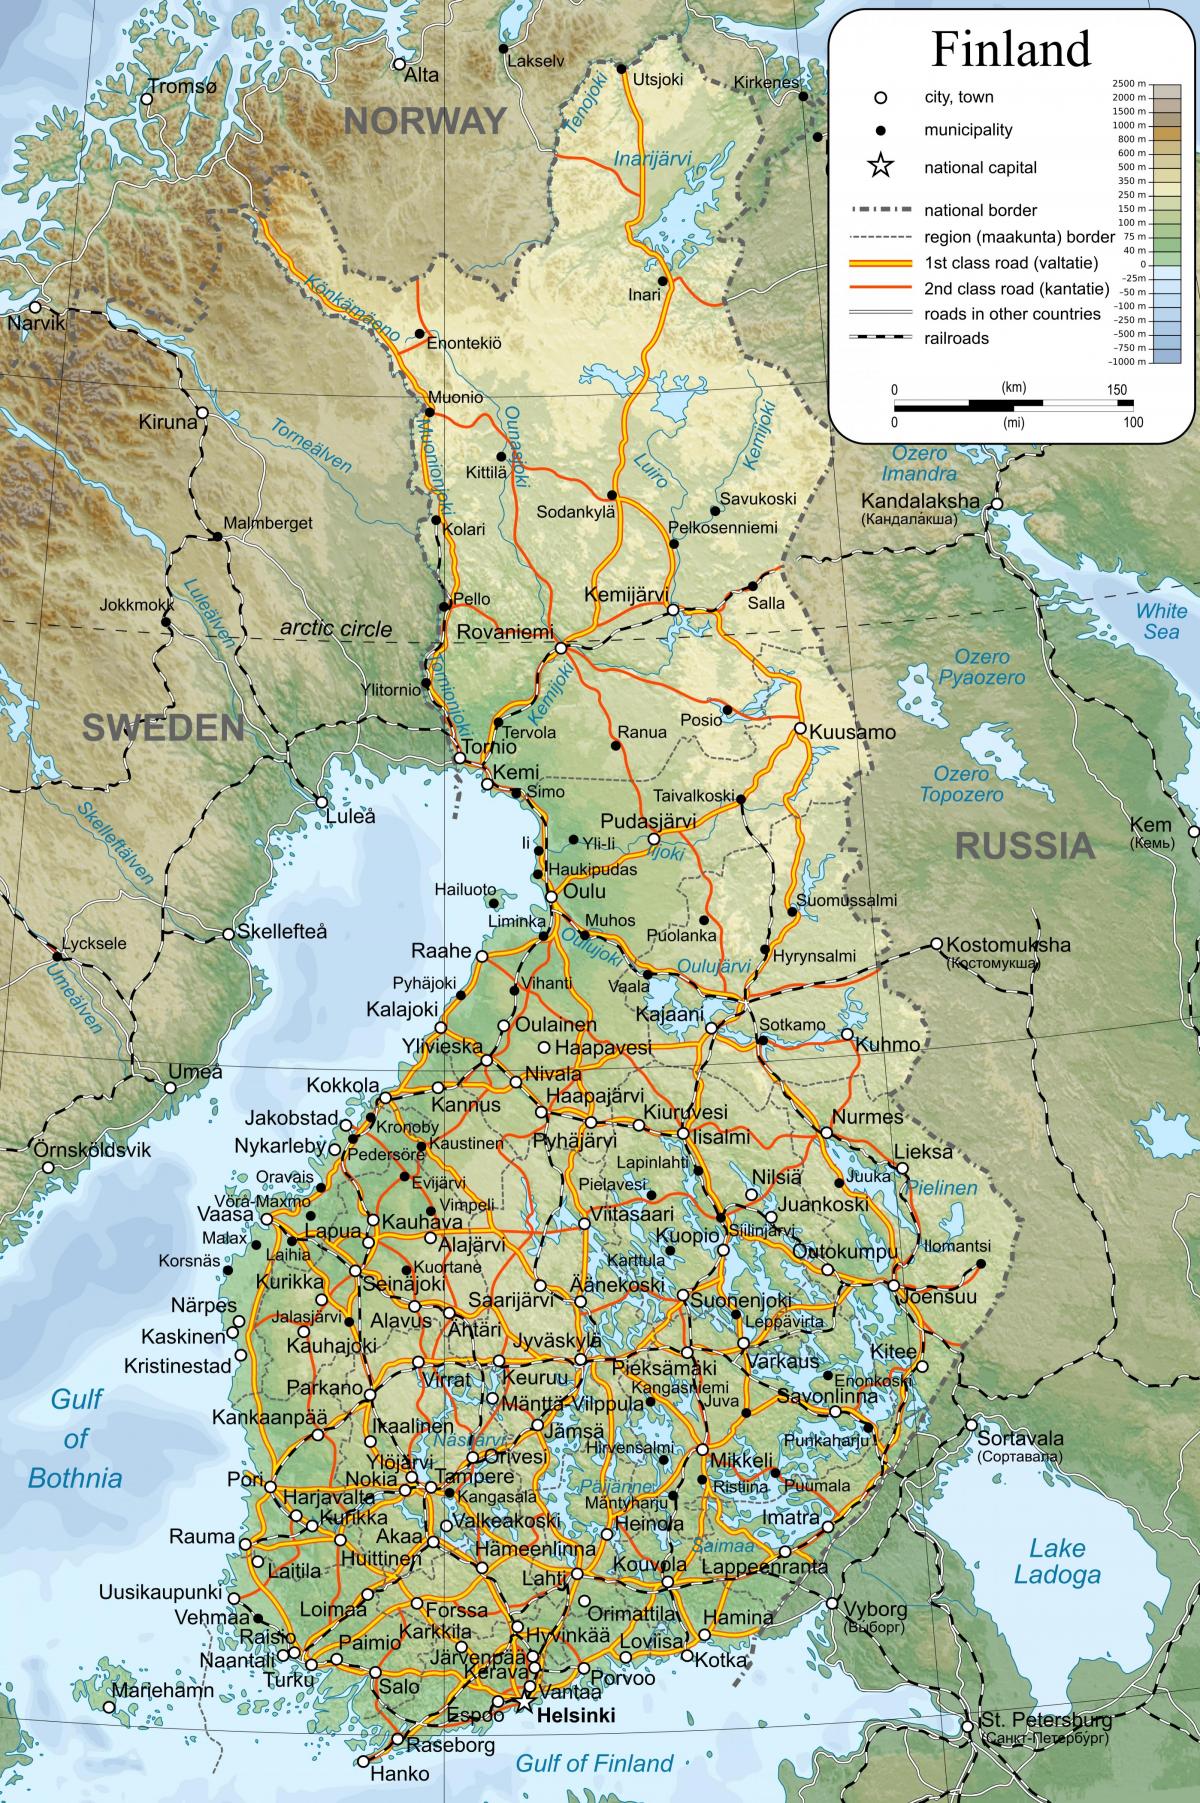 Finland op de kaart van de wereld